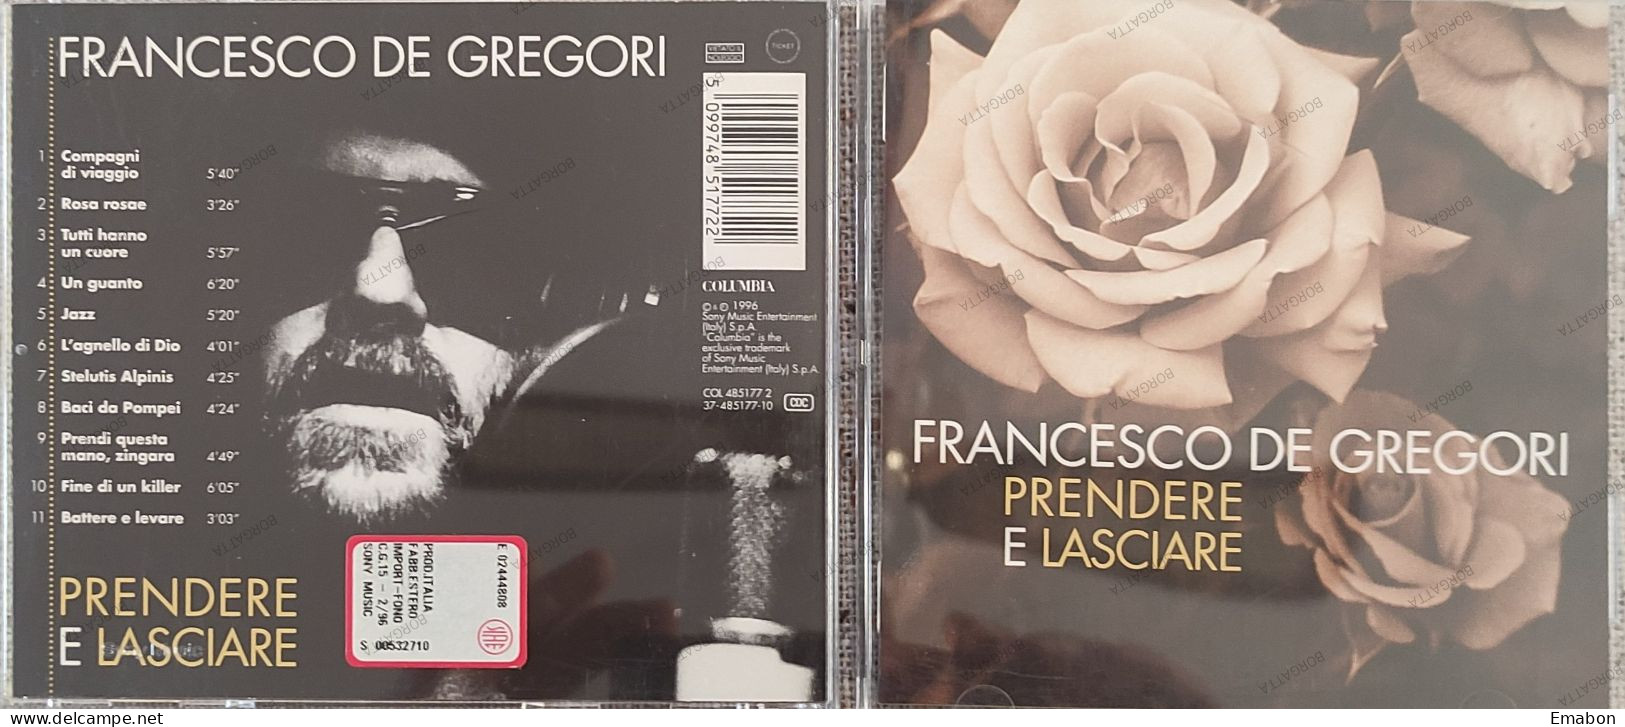 BORGATTA - ITALIANA - Cd FRANCESCO DE GREGORI - PRENDERE E LASCIARE - COLUMBIA  1996 -  USATO In Buono Stato - Other - Italian Music